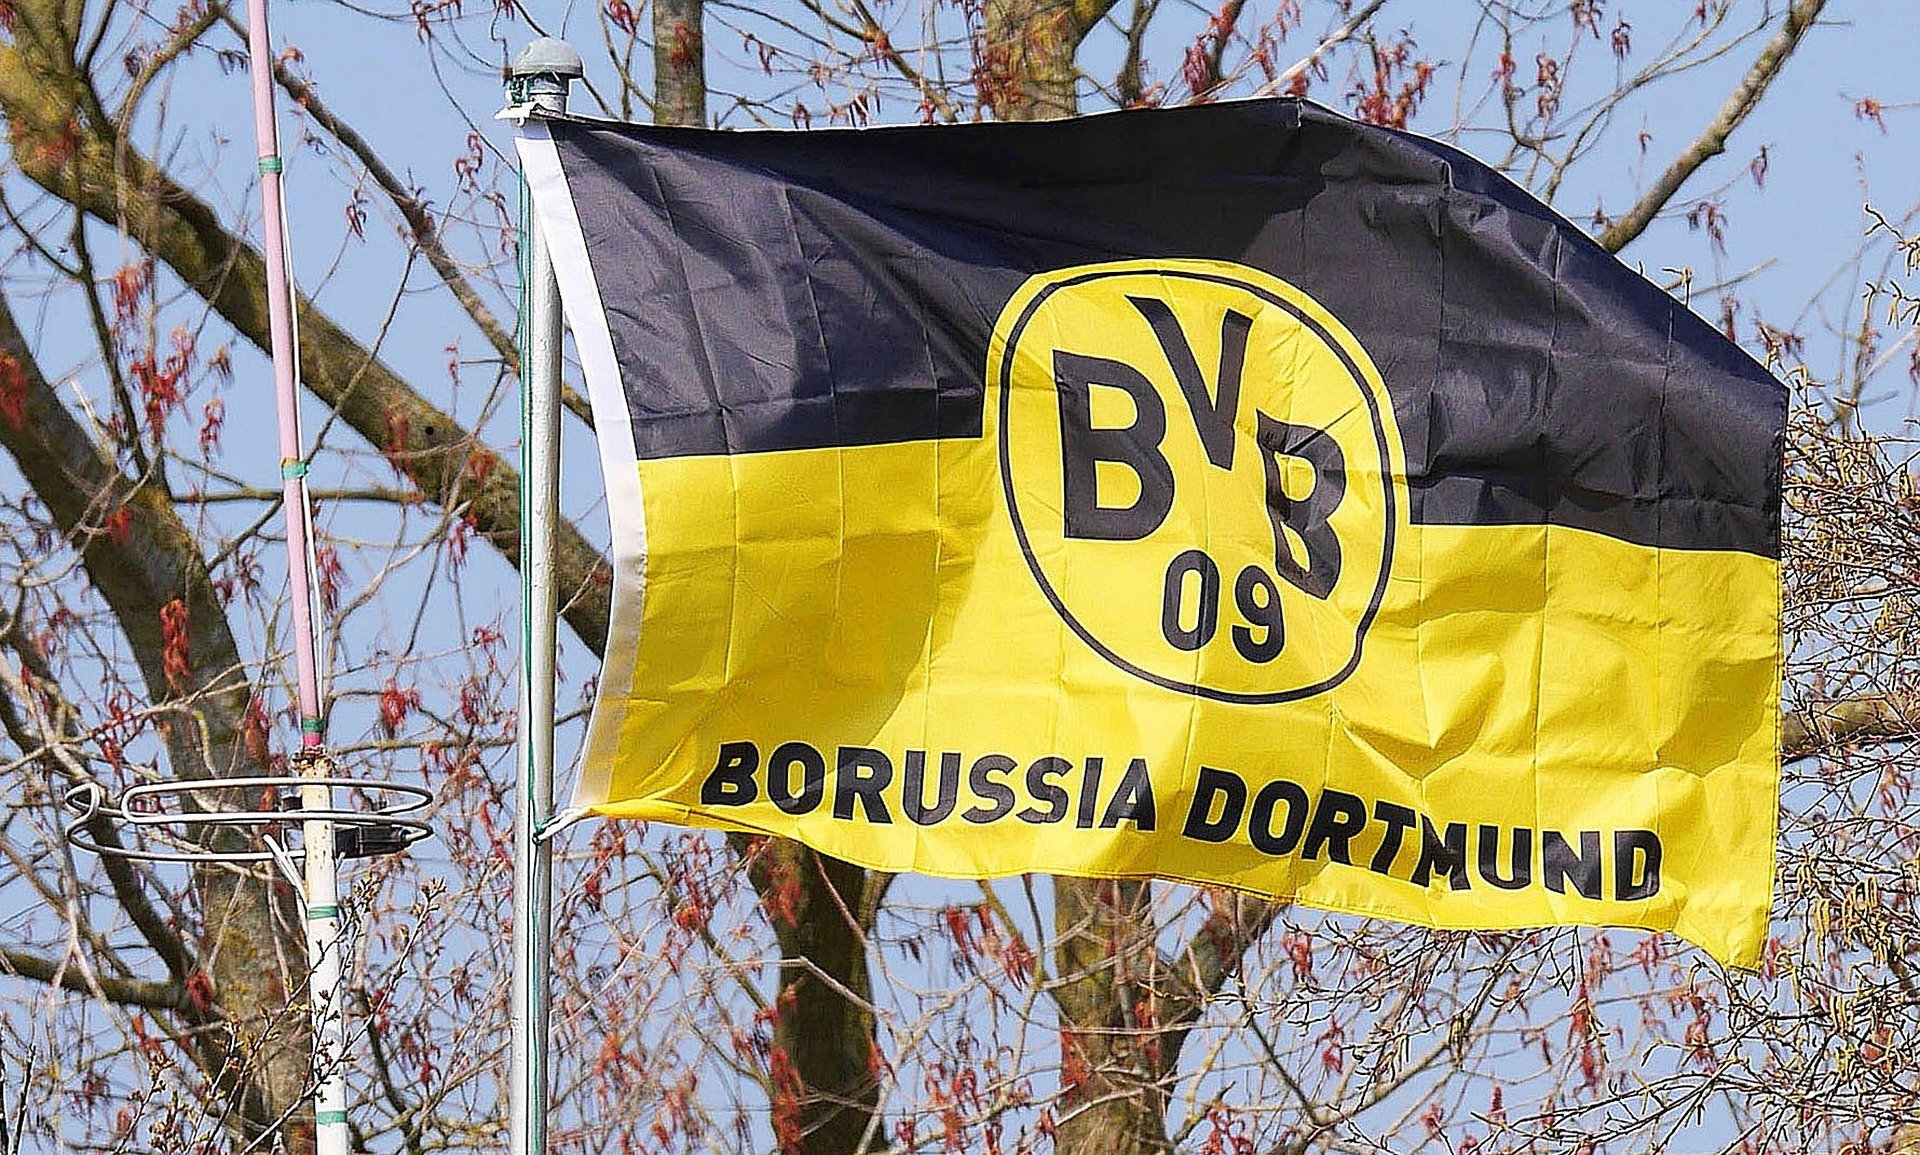 O Borussia Dortmund conta com muitos jogadores que se destacaram marcando inúmeros gols. Veja quem é o maior artilheiro do Borussia Dortmund.